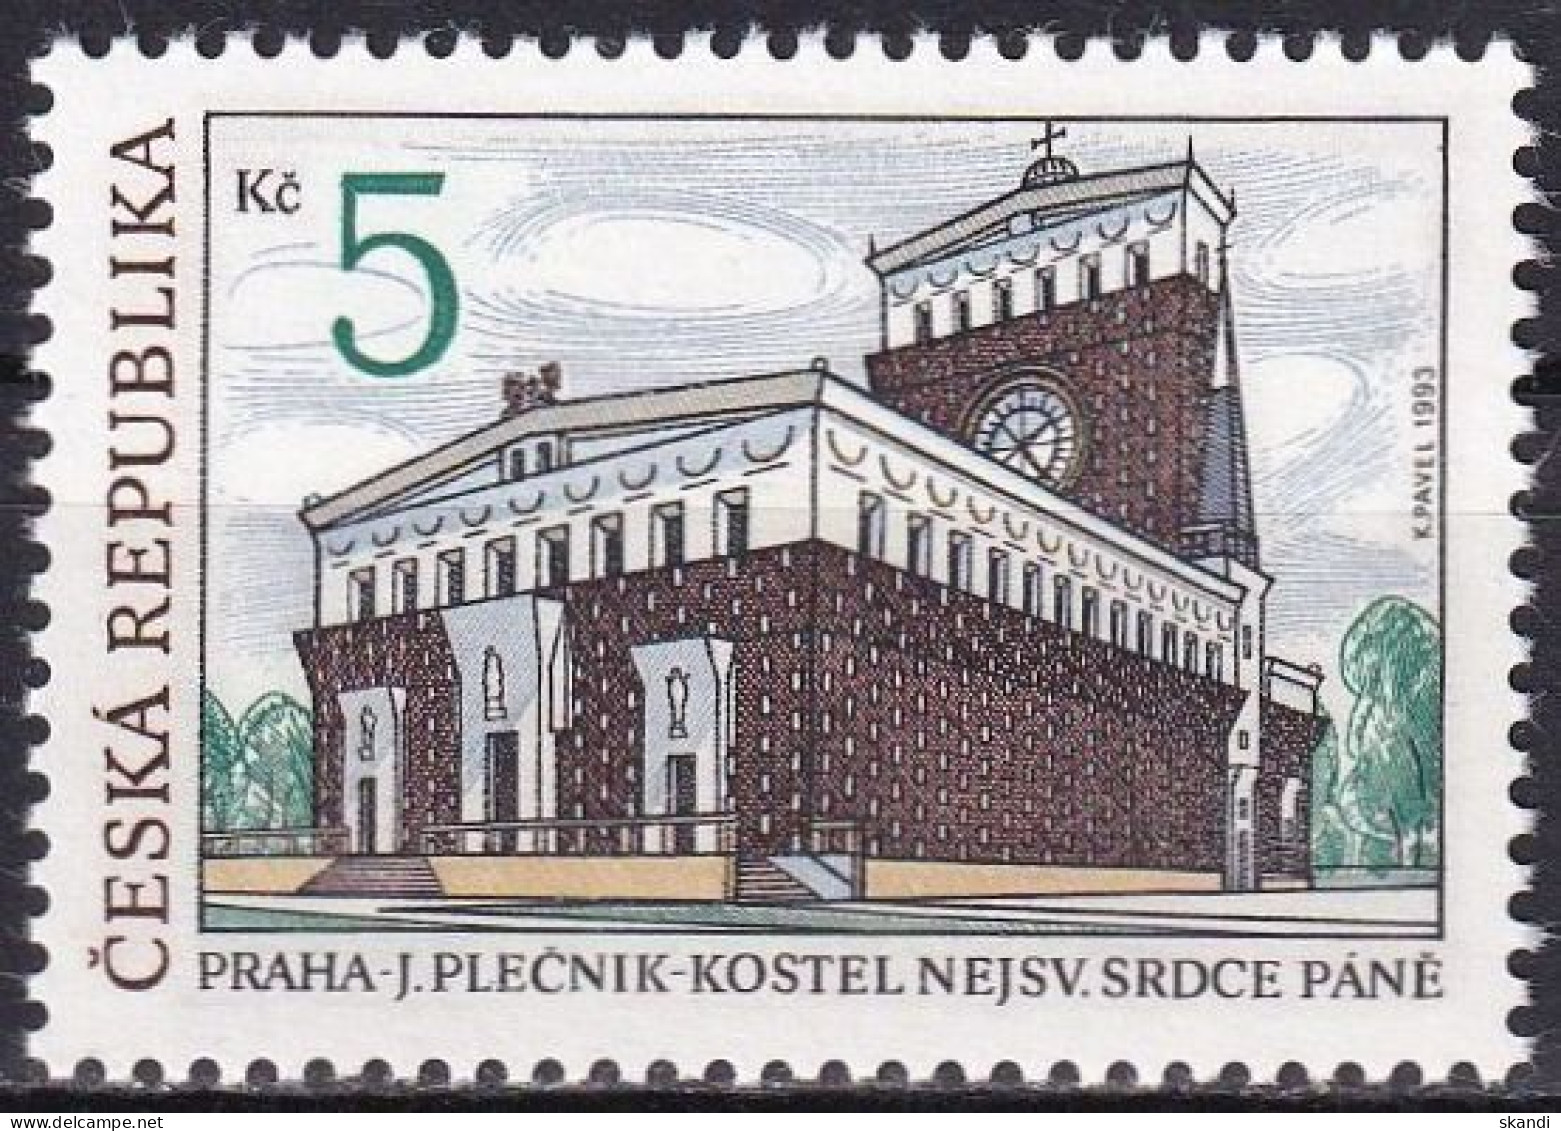 TSCHECHISCHE REPUBLIK 1993 Mi-Nr. 6 ** MNH - Unused Stamps